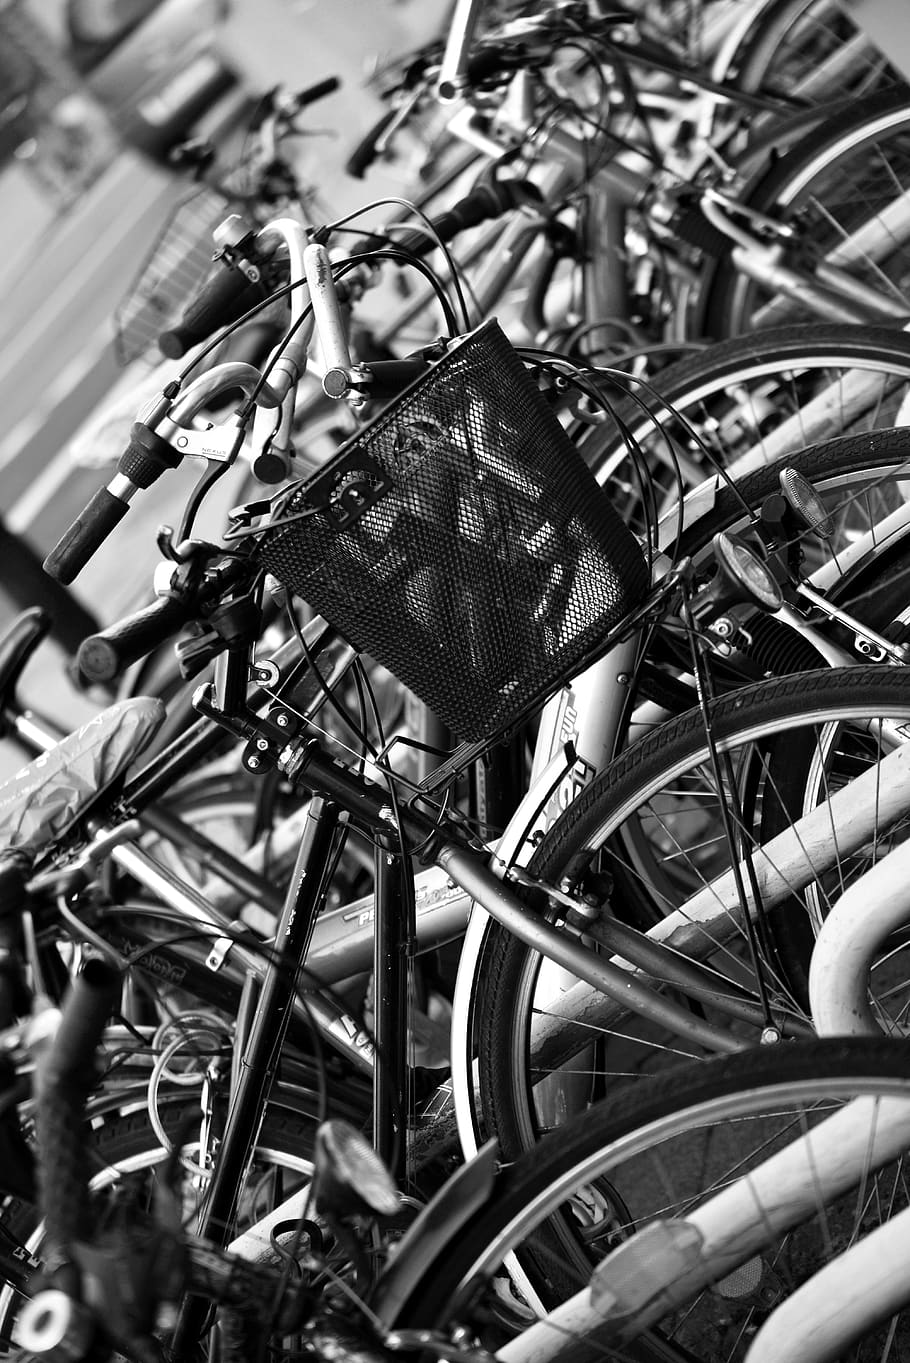 sepeda, keranjang sepeda, pusat kota, taman, rak sepeda, banyak, roda, setang, hitam putih, tidak ada orang